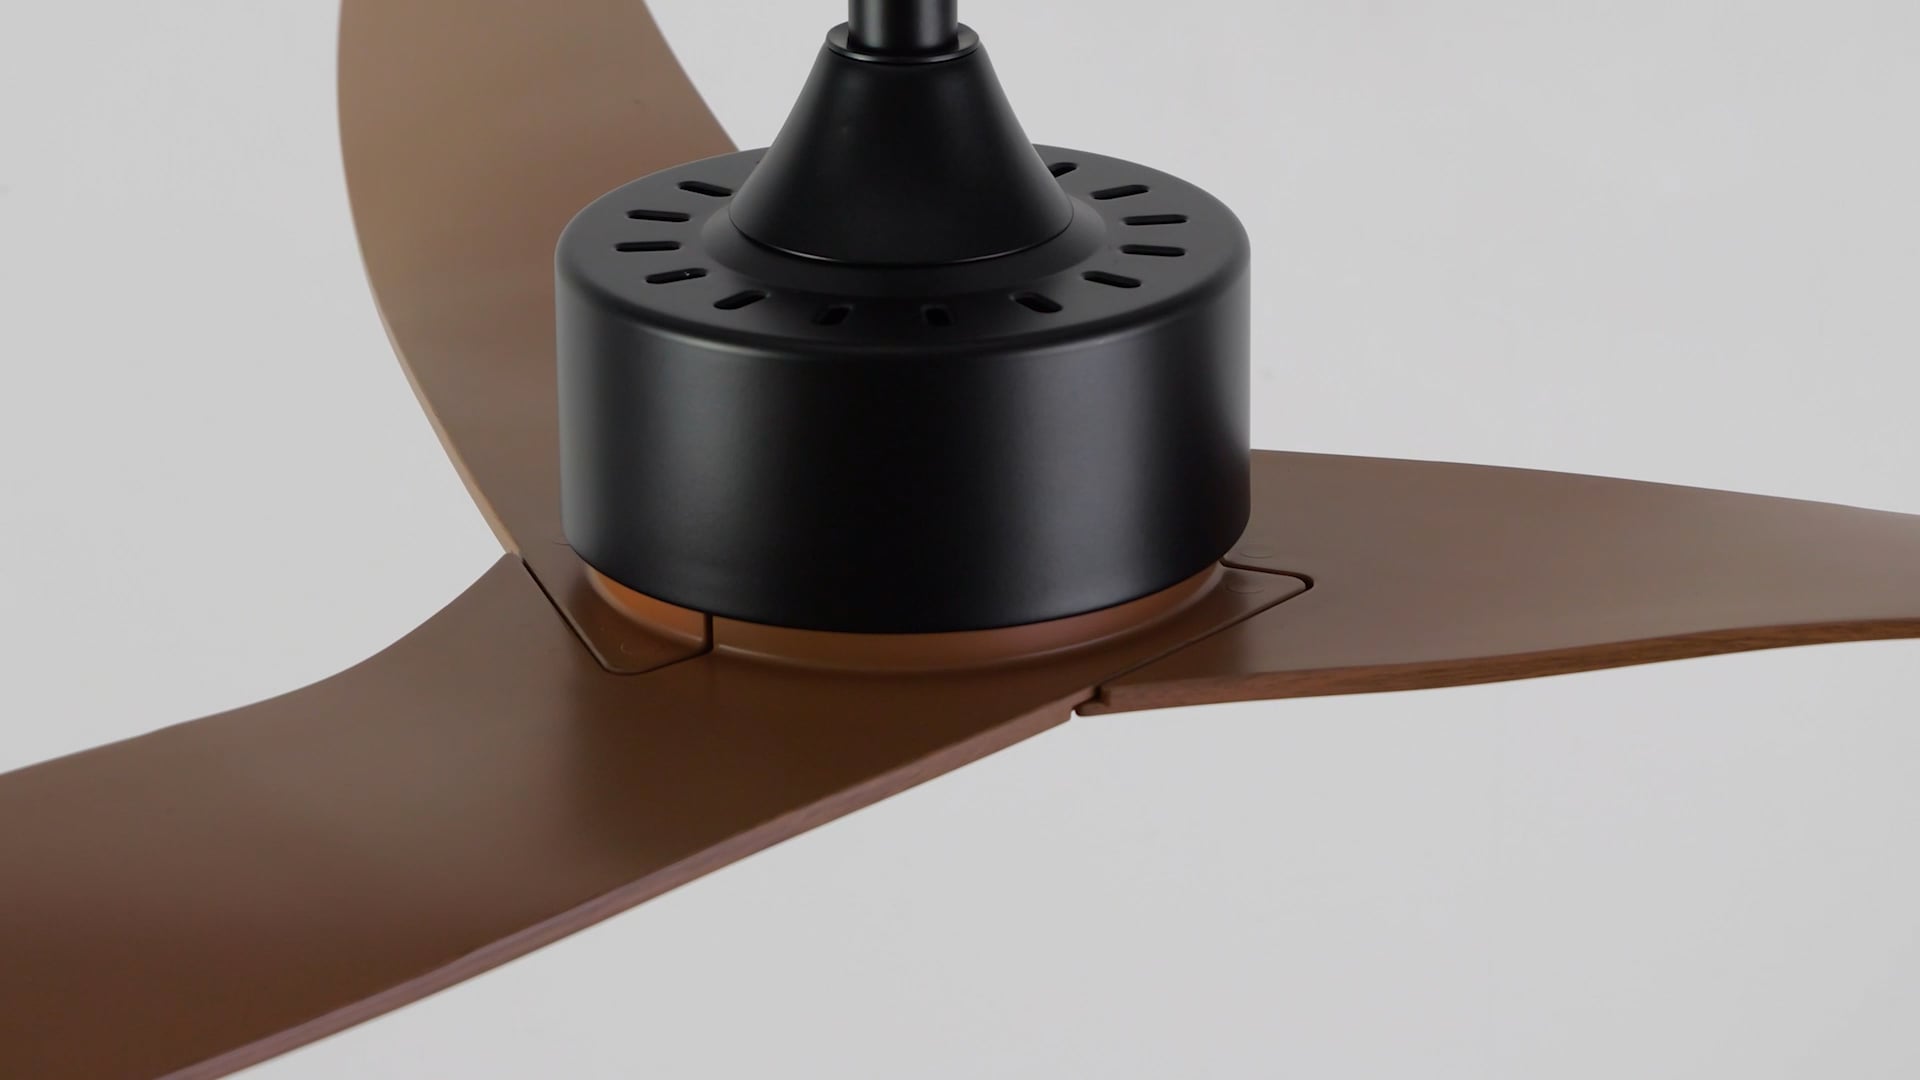 Aldrin 50" Modern Iron/Plastic App6-Speed Razor Ceiling Fan, Light Brown Wood